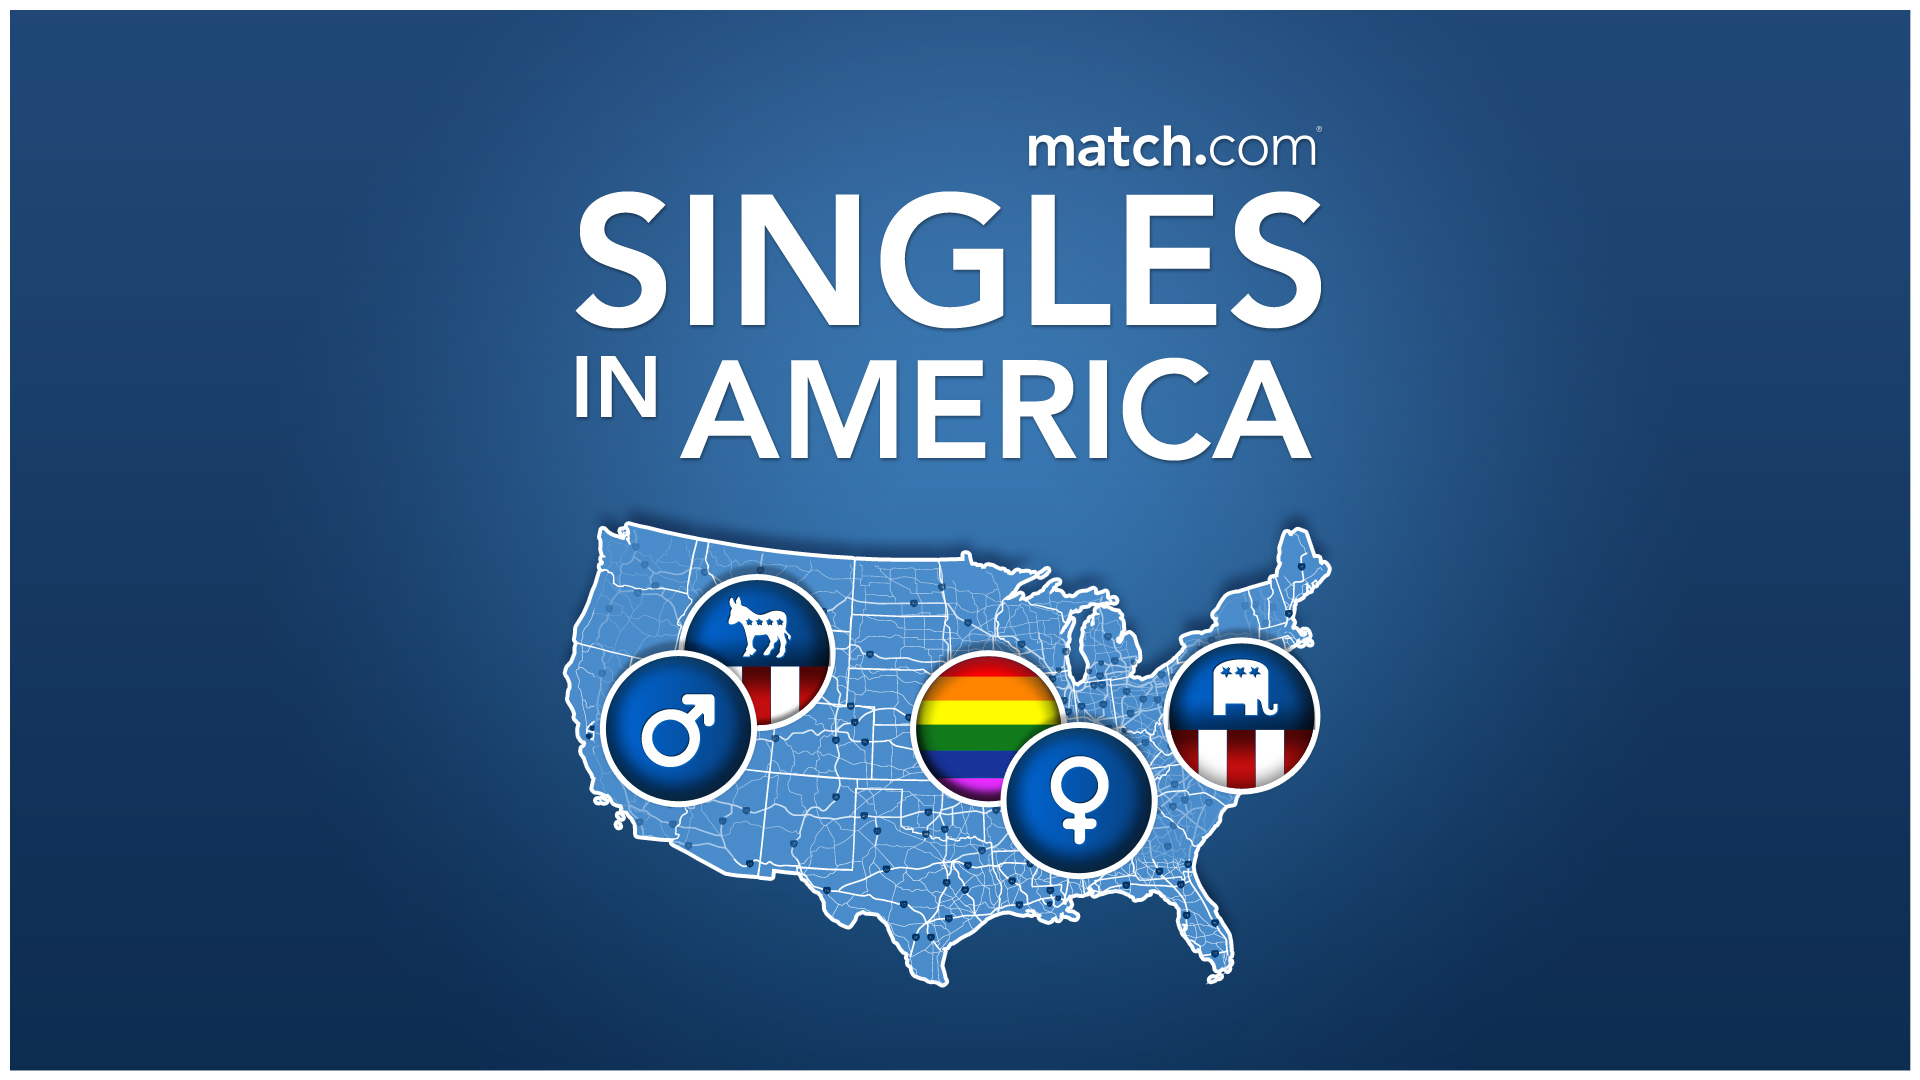 Single match. Match.com. Match.com us. Https://uk.Match.com/.